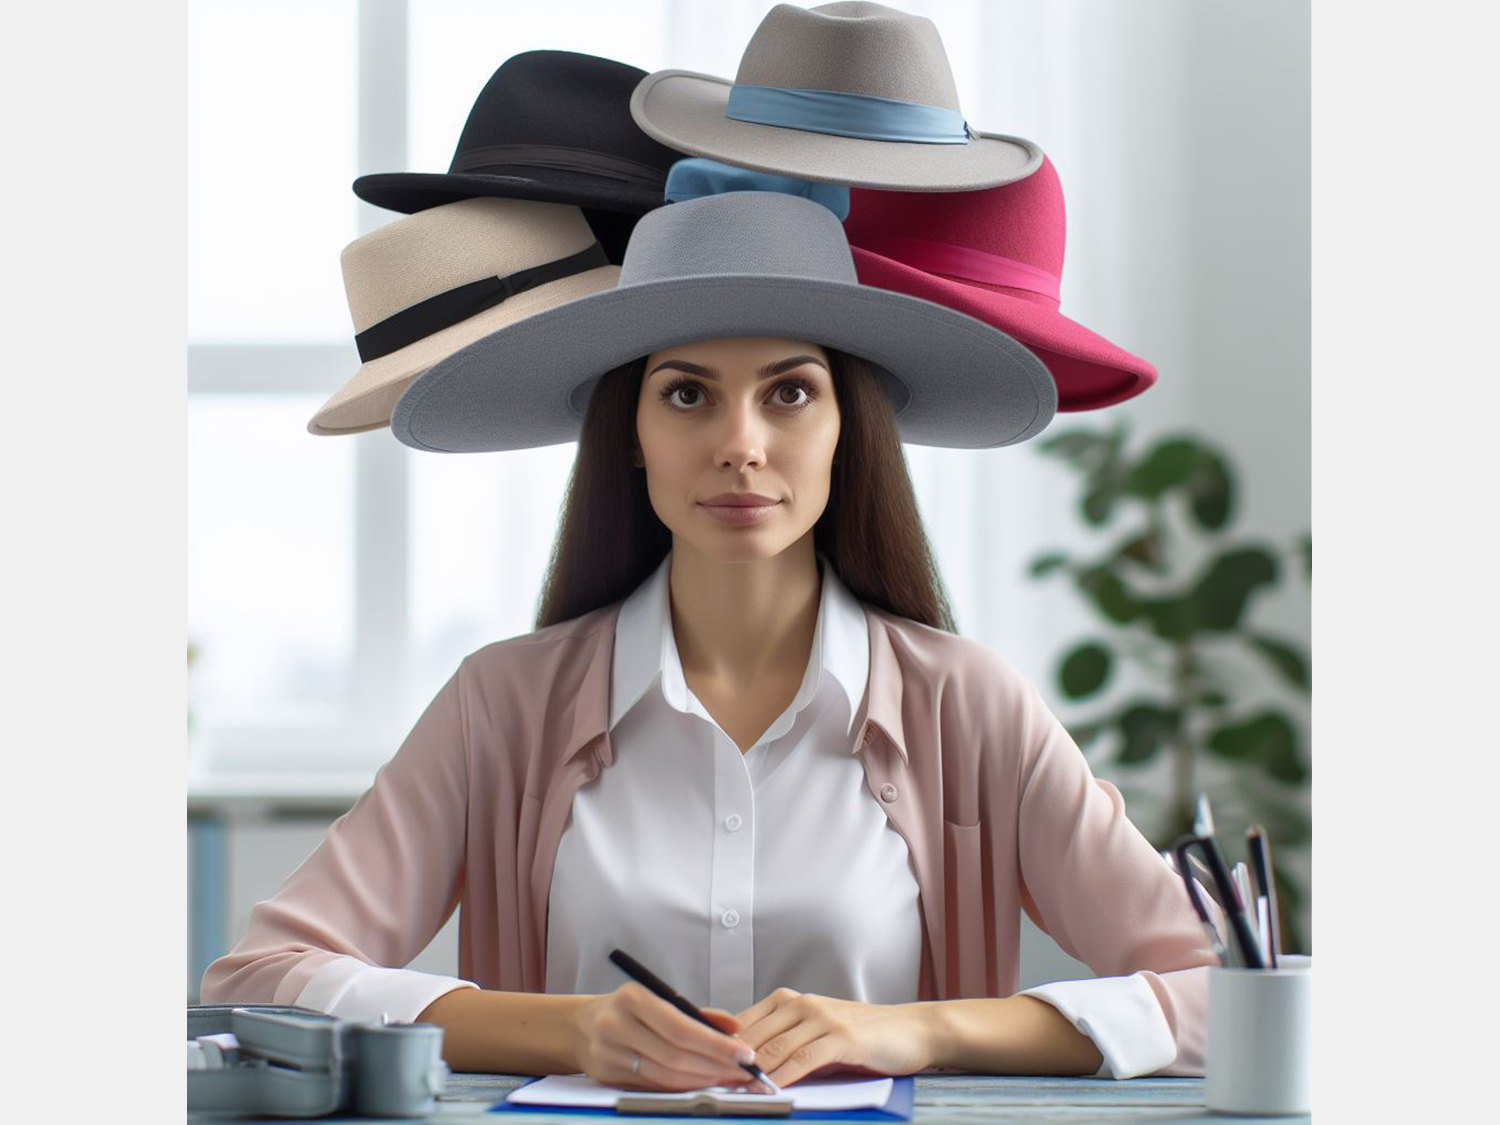 Frau mit verschiedenen Hüten auf dem Kopf - Sinnbild für rollenbasiertes Arbeiten